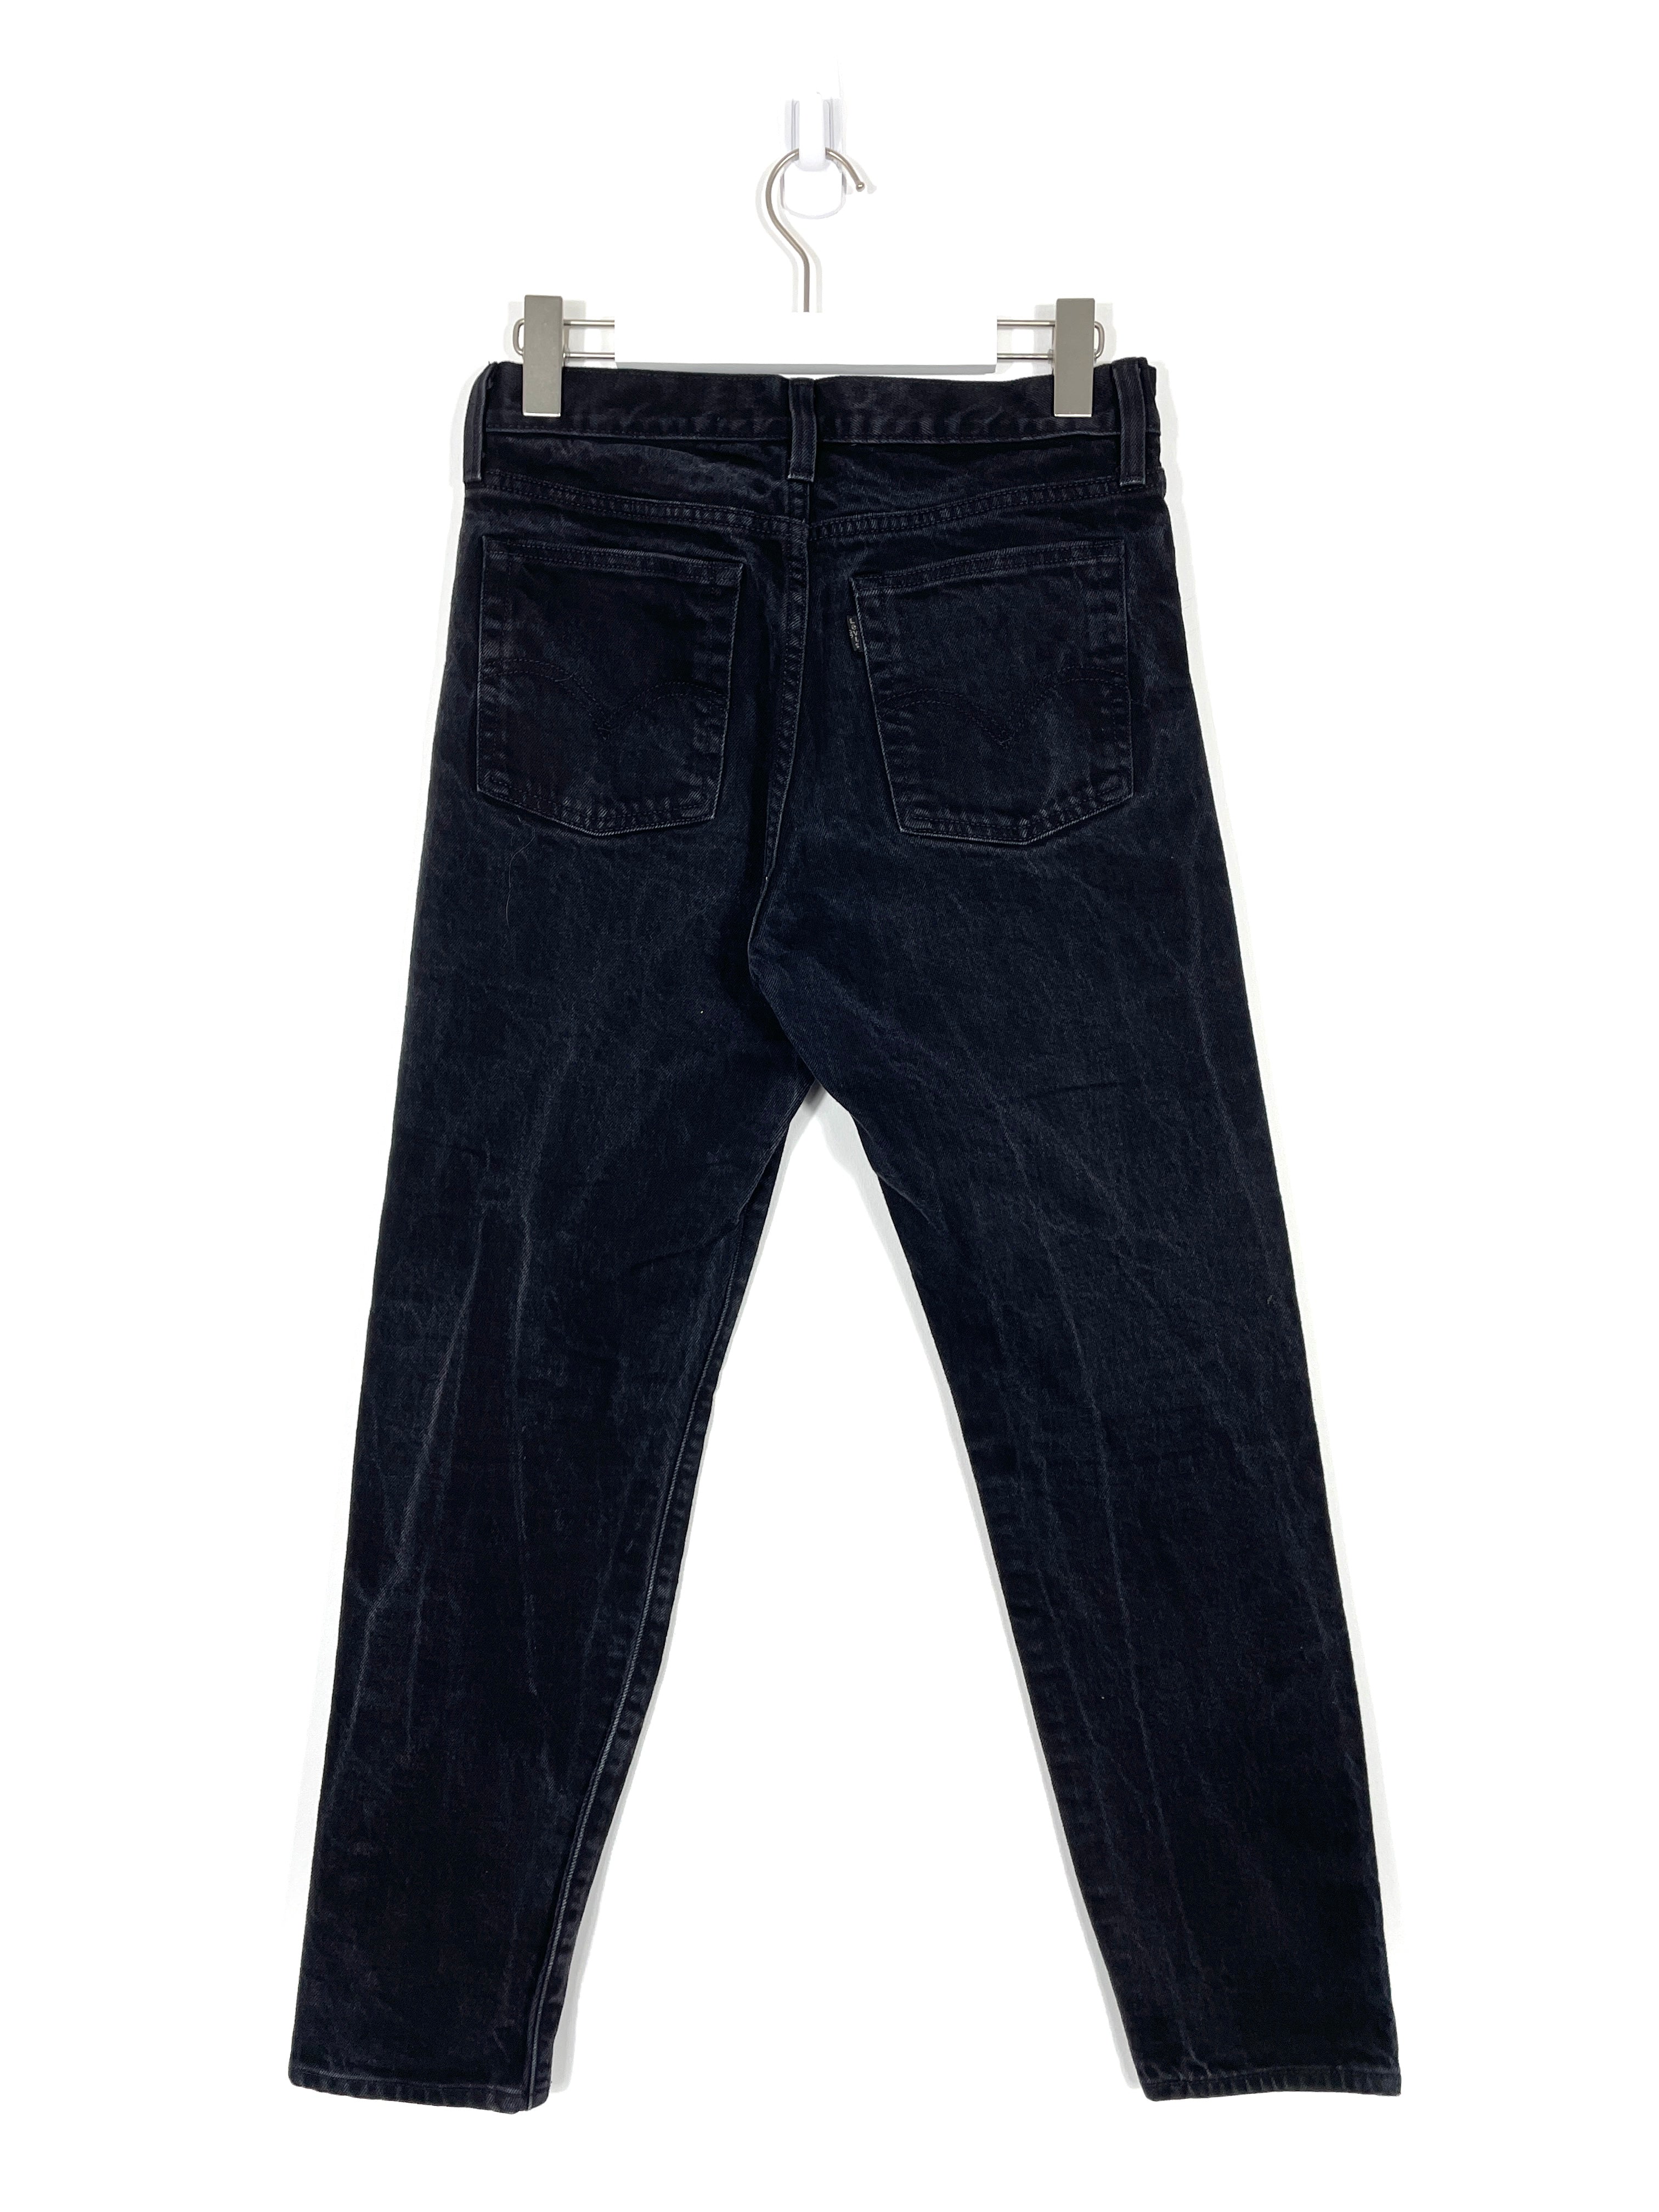 Vintage Levis Jeans - Women's 28x28